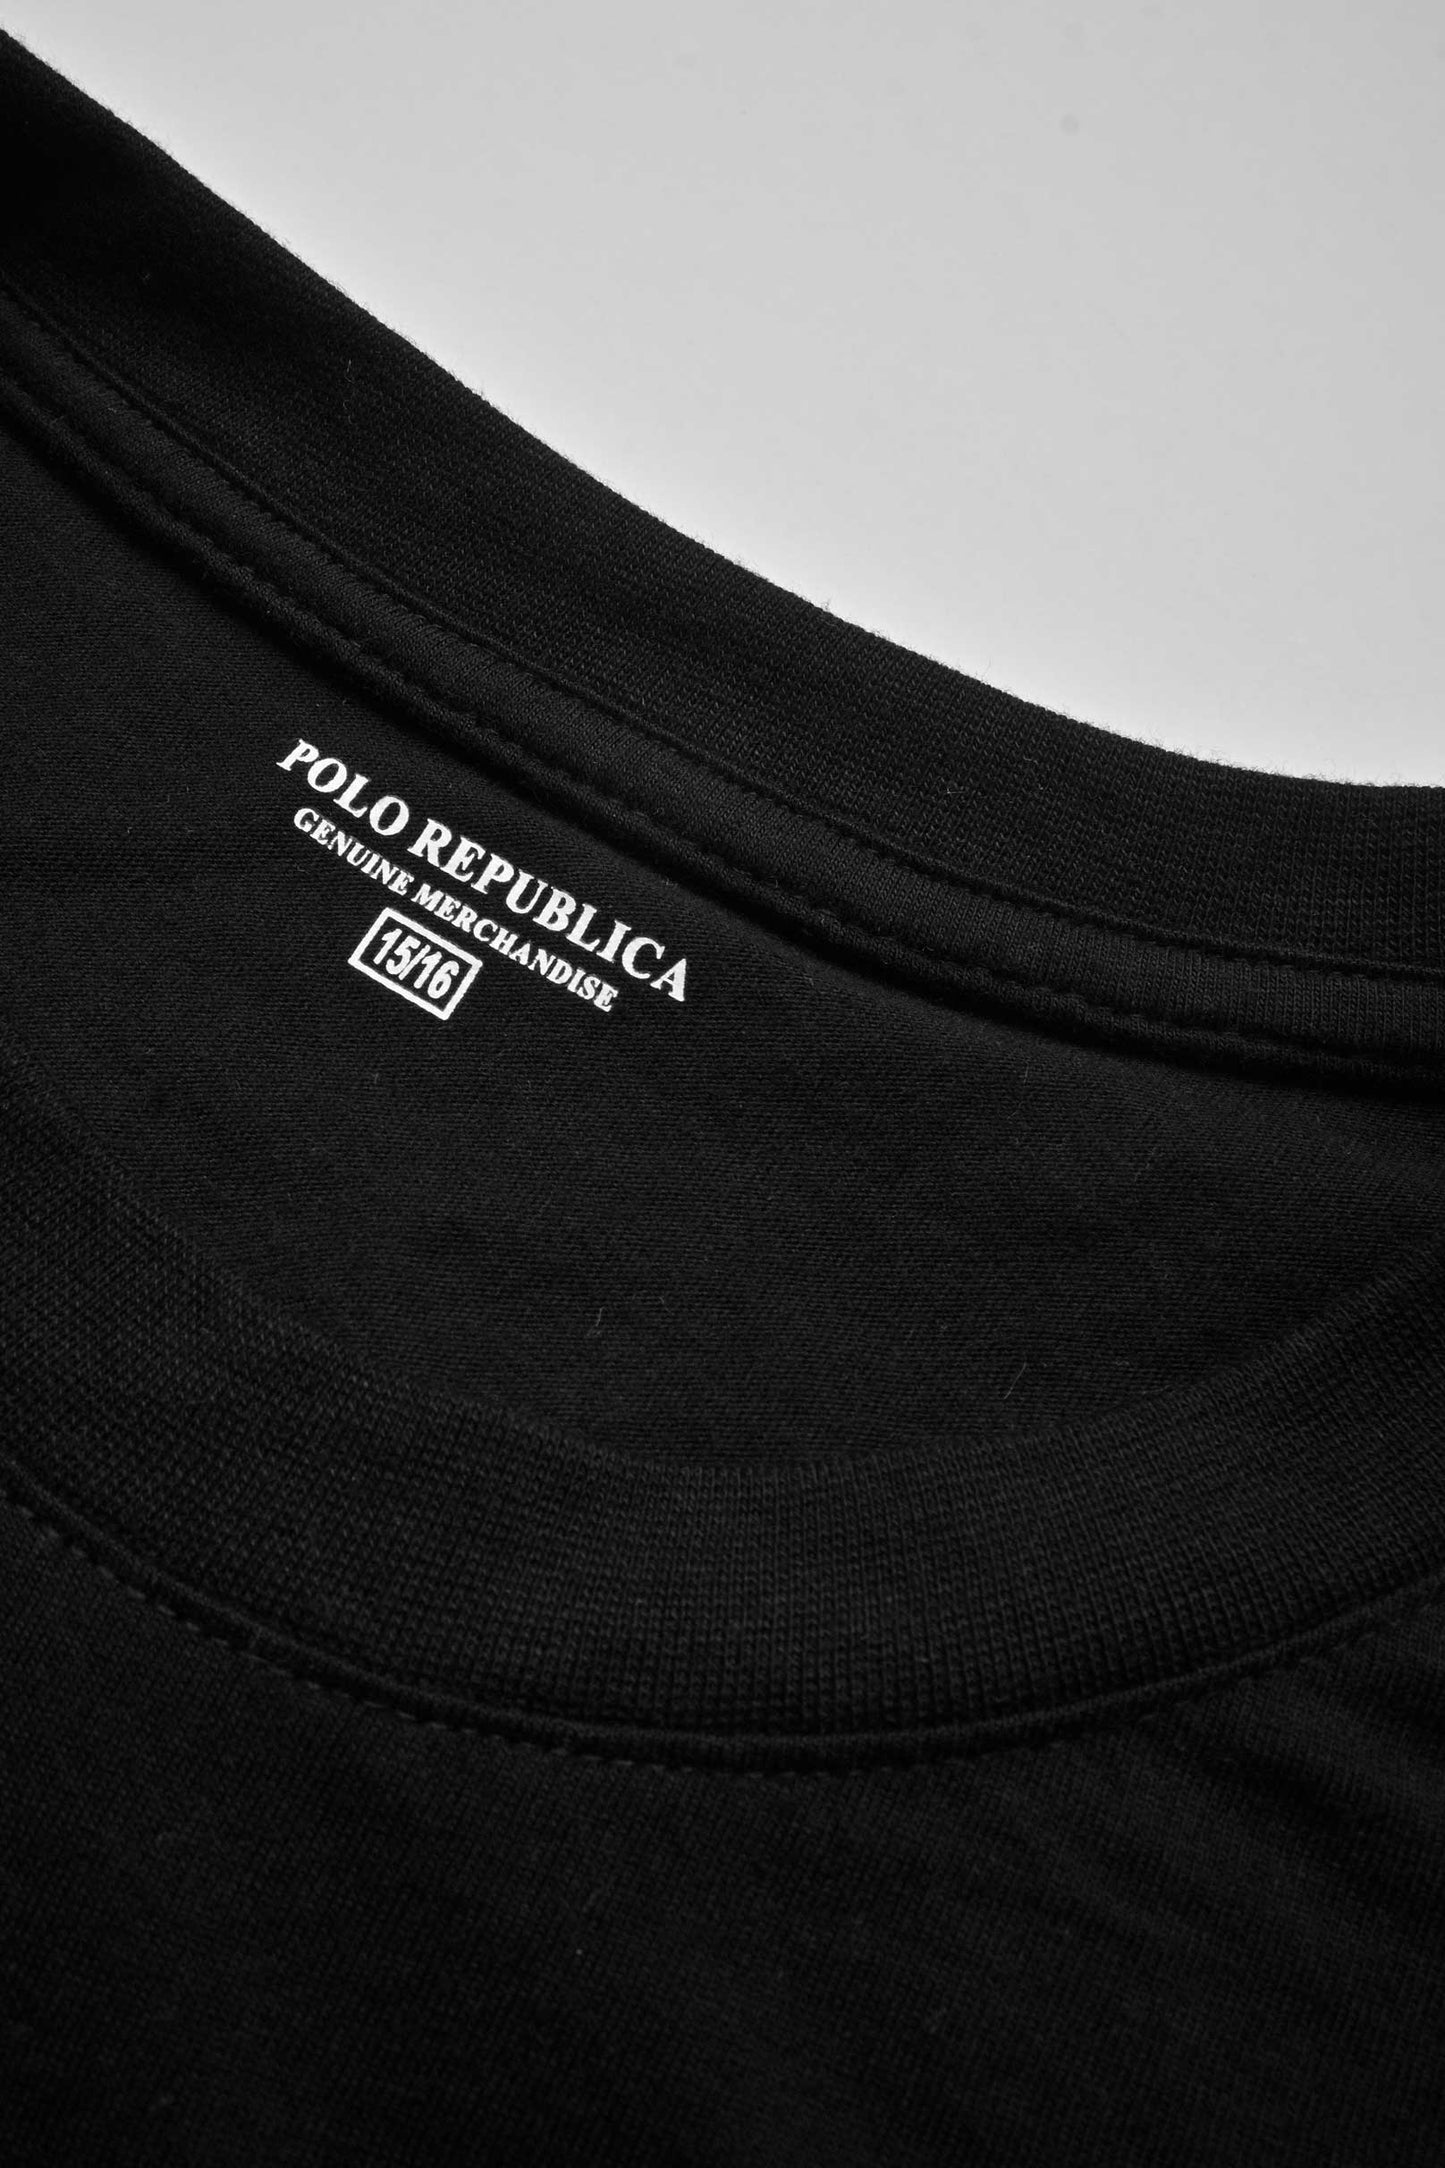 Polo Republica Boy's Cool Polar Bear Printed Tee Shirt